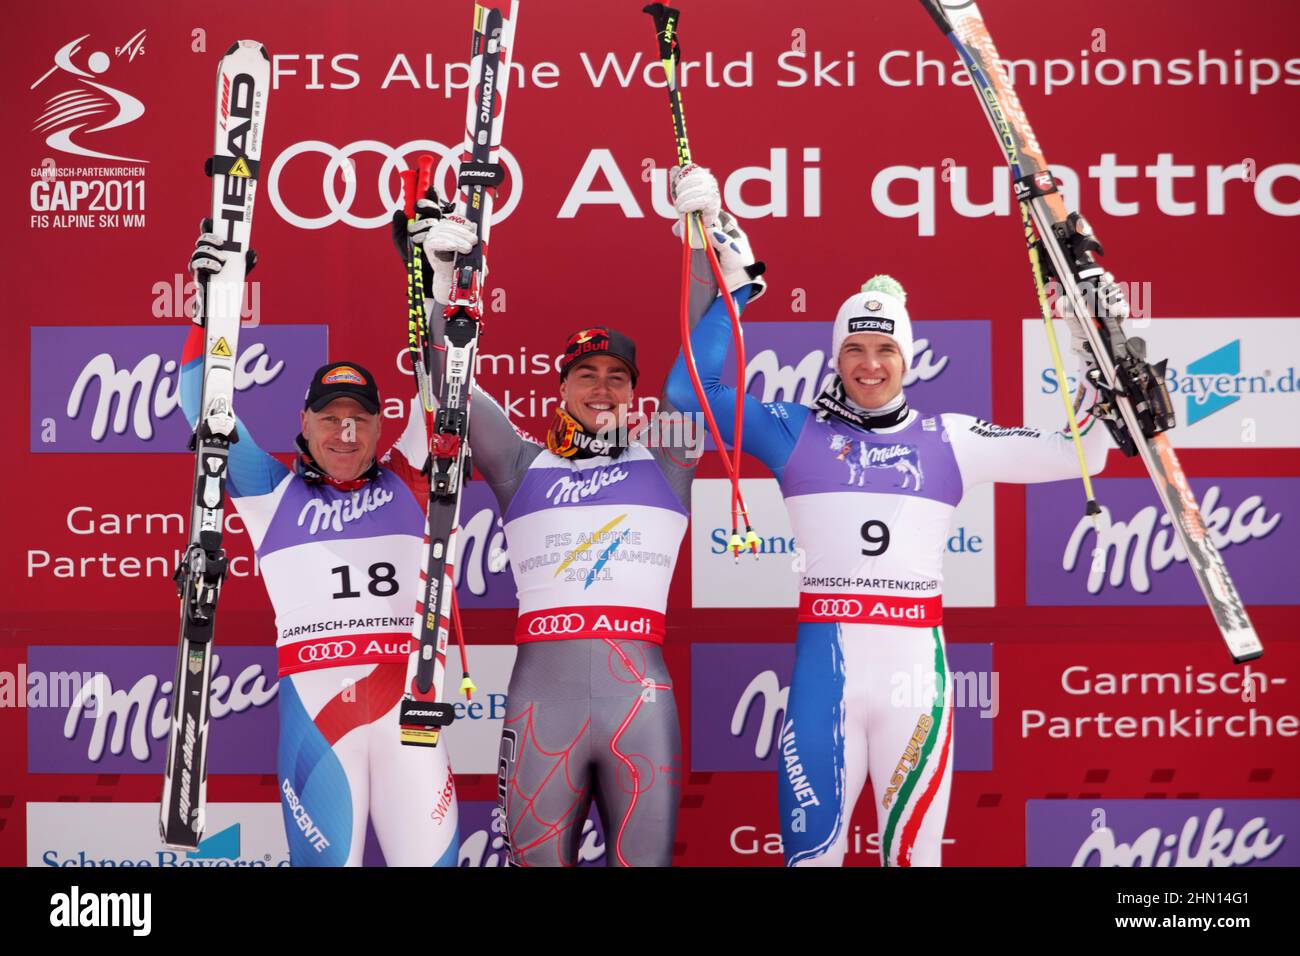 Didier Cuche (plata), Erik Guay (oro), Christof Innerhofer (bronce) en el Campeonato Mundial de Esquí Alpino FIS 2011 Foto de stock